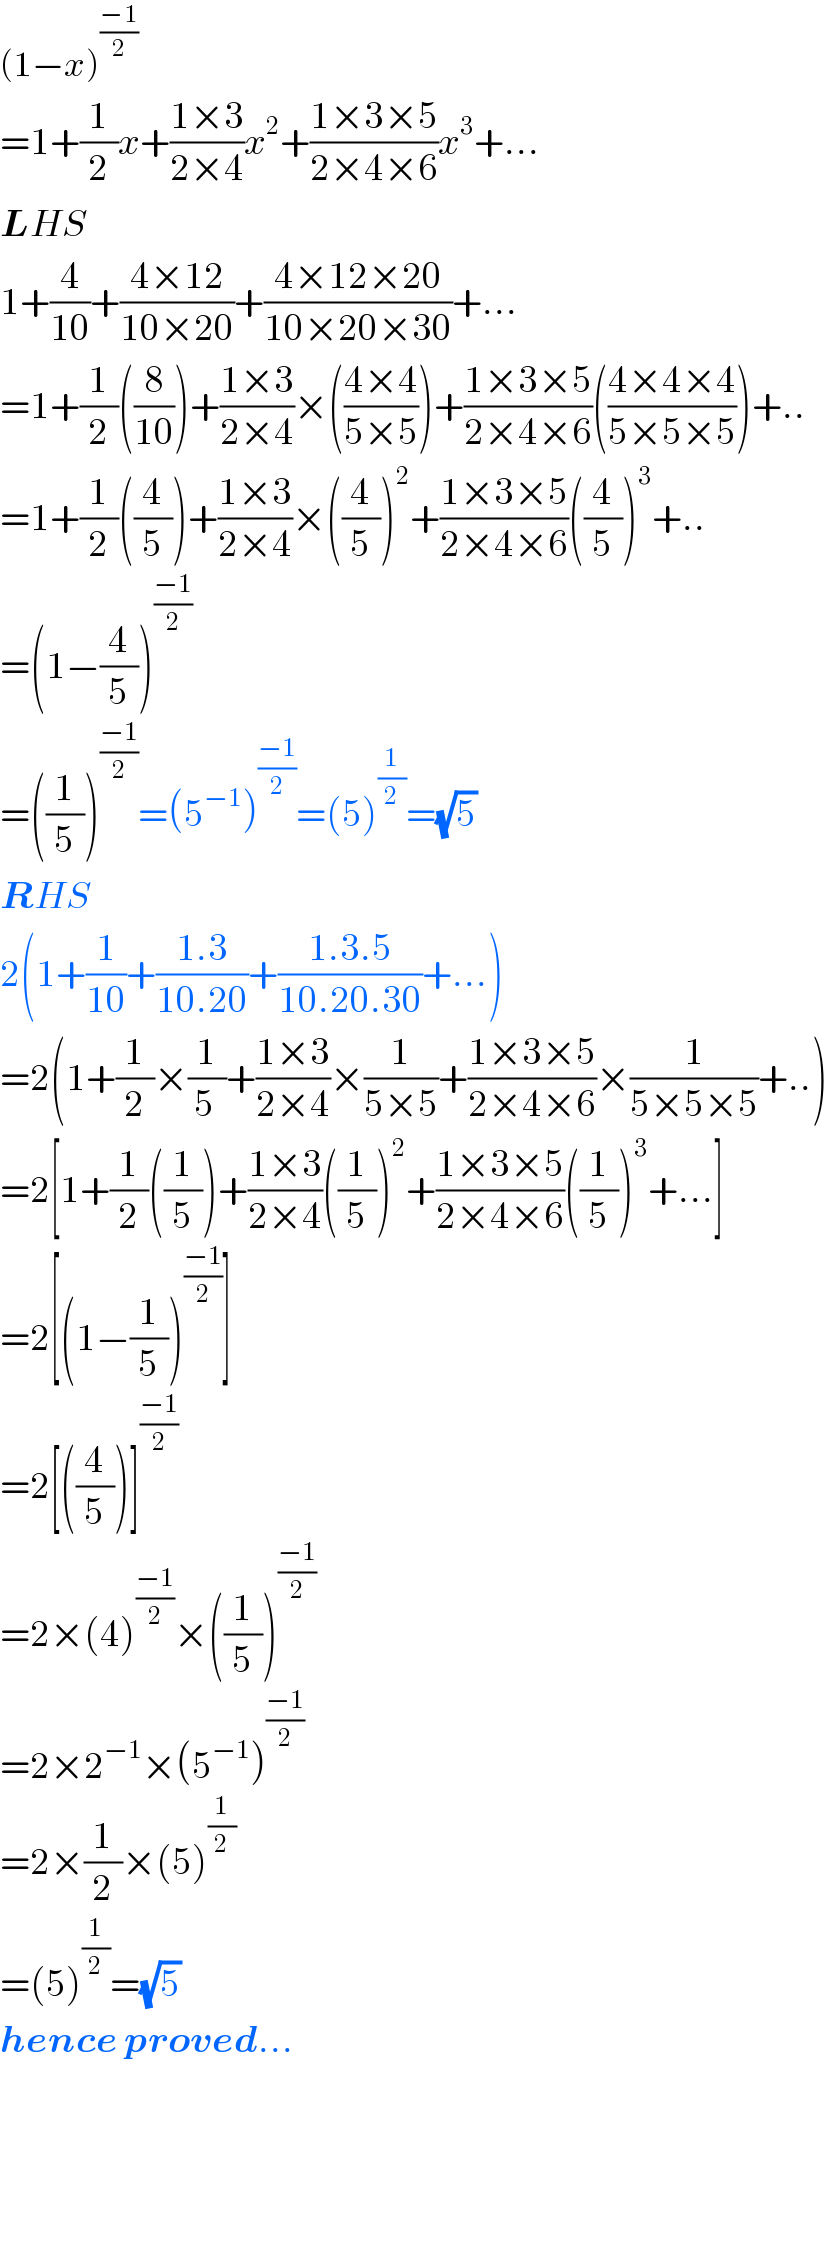 (1−x)^((−1)/2)   =1+(1/2)x+((1×3)/(2×4))x^2 +((1×3×5)/(2×4×6))x^3 +...  LHS  1+(4/(10))+((4×12)/(10×20))+((4×12×20)/(10×20×30))+...  =1+(1/2)((8/(10)))+((1×3)/(2×4))×(((4×4)/(5×5)))+((1×3×5)/(2×4×6))(((4×4×4)/(5×5×5)))+..  =1+(1/2)((4/5))+((1×3)/(2×4))×((4/5))^2 +((1×3×5)/(2×4×6))((4/5))^3 +..  =(1−(4/5))^((−1)/2)   =((1/5))^((−1)/2) =(5^(−1) )^((−1)/2) =(5)^(1/2) =(√5)  RHS  2(1+(1/(10))+((1.3)/(10.20))+((1.3.5)/(10.20.30))+...)  =2(1+(1/2)×(1/(5 ))+((1×3)/(2×4))×(1/(5×5))+((1×3×5)/(2×4×6))×(1/(5×5×5))+..)  =2[1+(1/2)((1/5))+((1×3)/(2×4))((1/5))^2 +((1×3×5)/(2×4×6))((1/5))^3 +...]  =2[(1−(1/5))^((−1)/2) ]  =2[((4/5))]^((−1)/2)   =2×(4)^((−1)/2) ×((1/5))^((−1)/2)   =2×2^(−1) ×(5^(−1) )^((−1)/2)   =2×(1/2)×(5)^(1/2)   =(5)^(1/2) =(√5)   hence proved...        